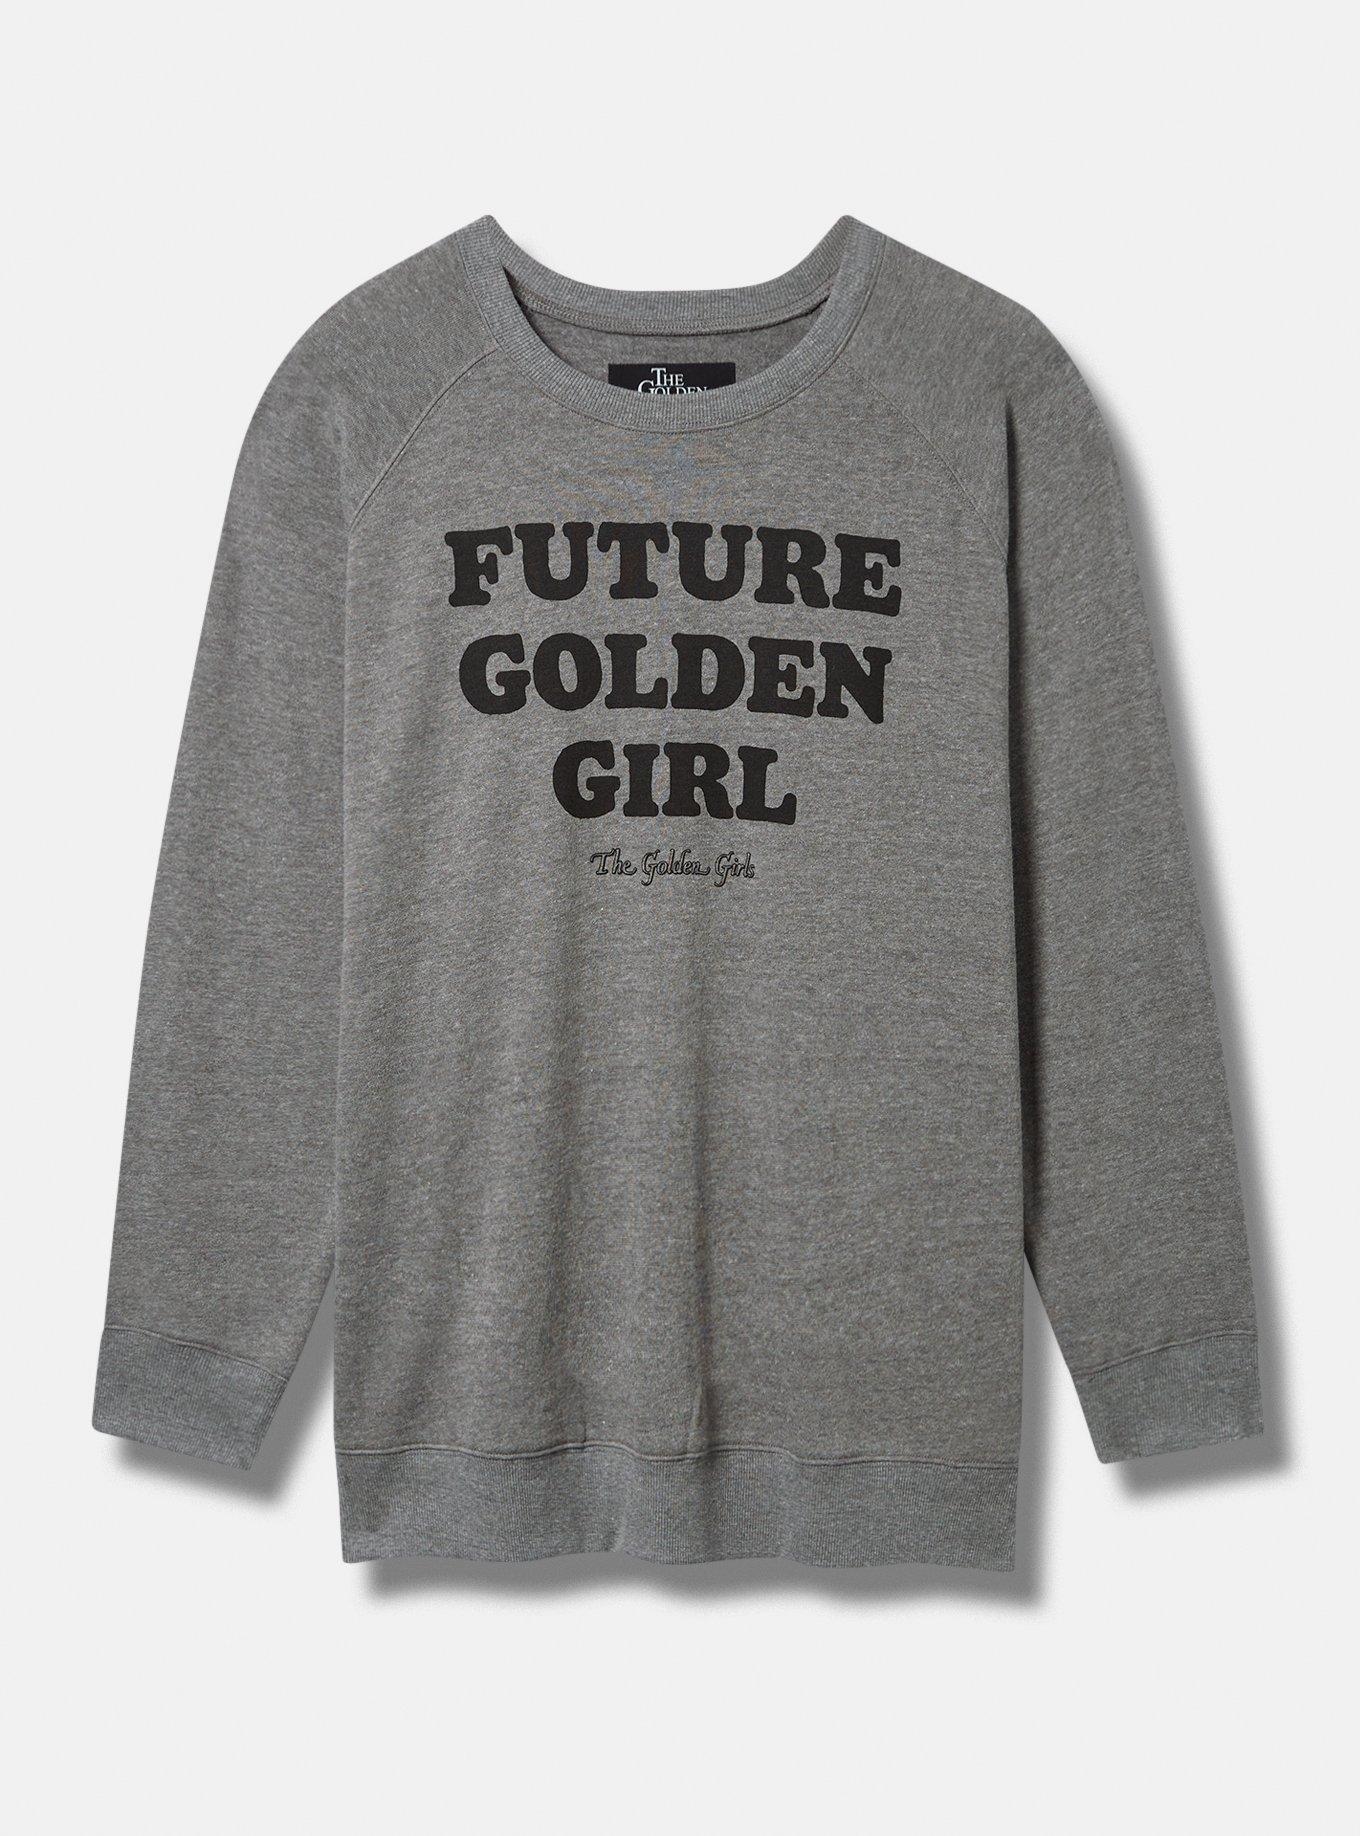 Plus Size - Golden Girls Classic Fit Cozy Fleece Crew Sweatshirt - Torrid